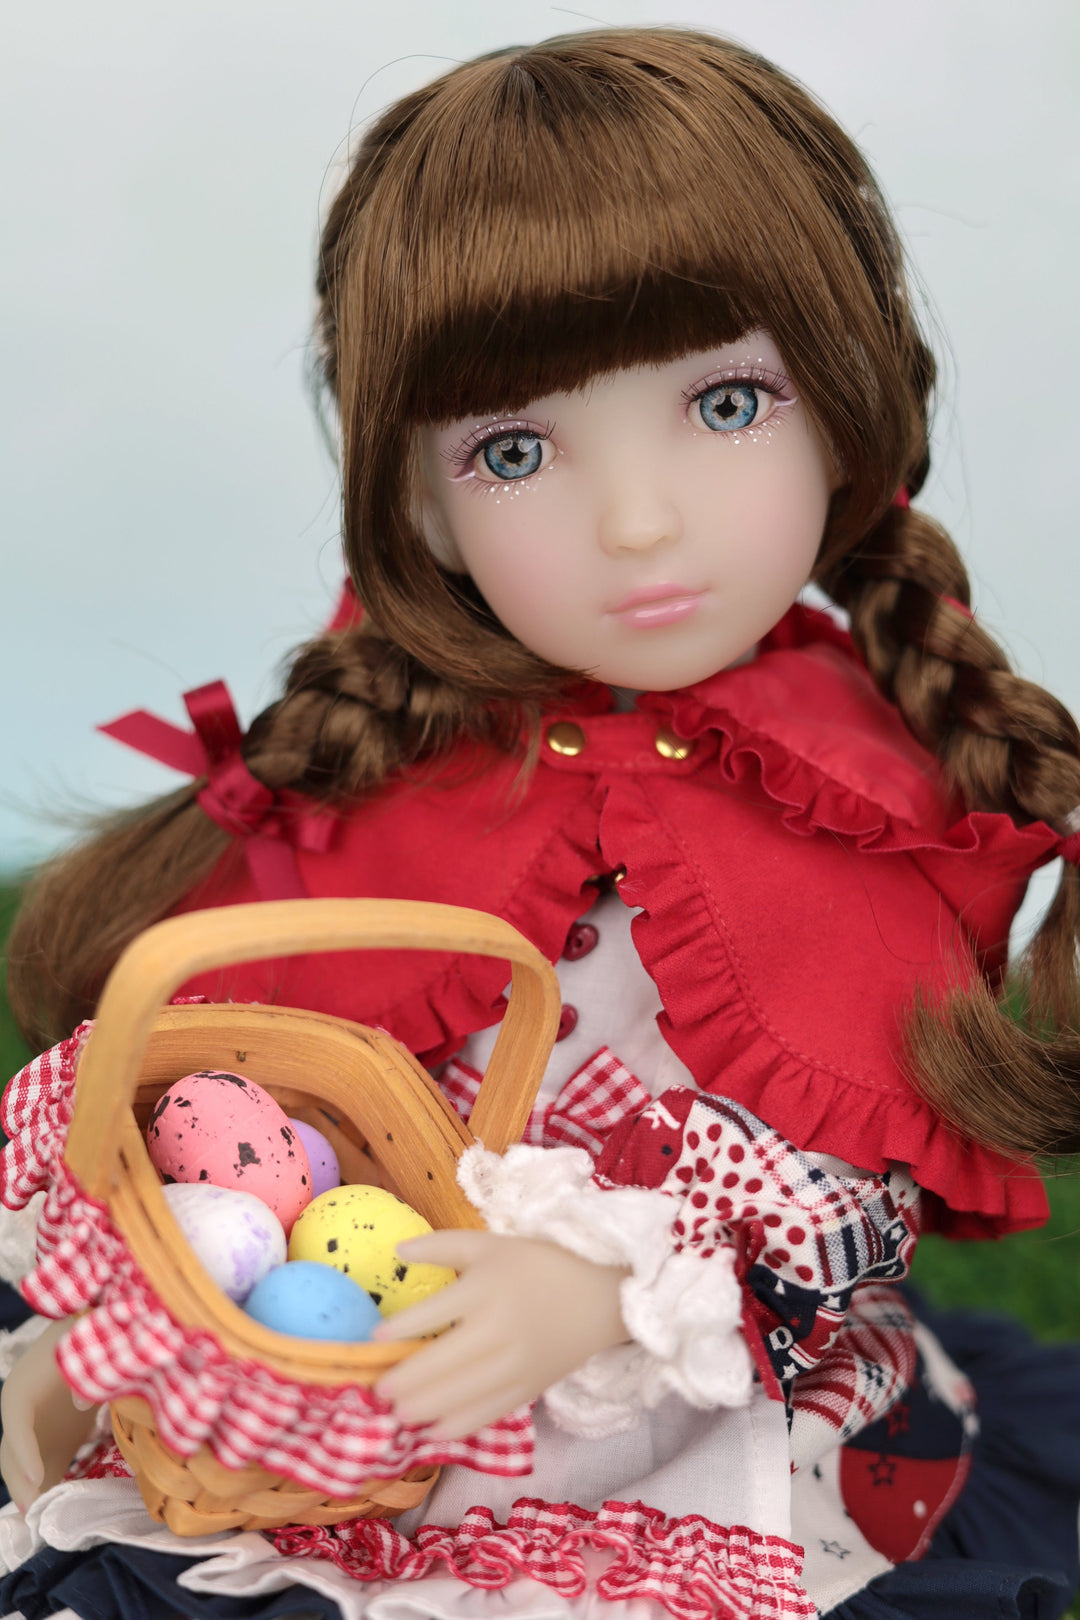 2024 Rubina - Fashion Friends Limited Edition doll